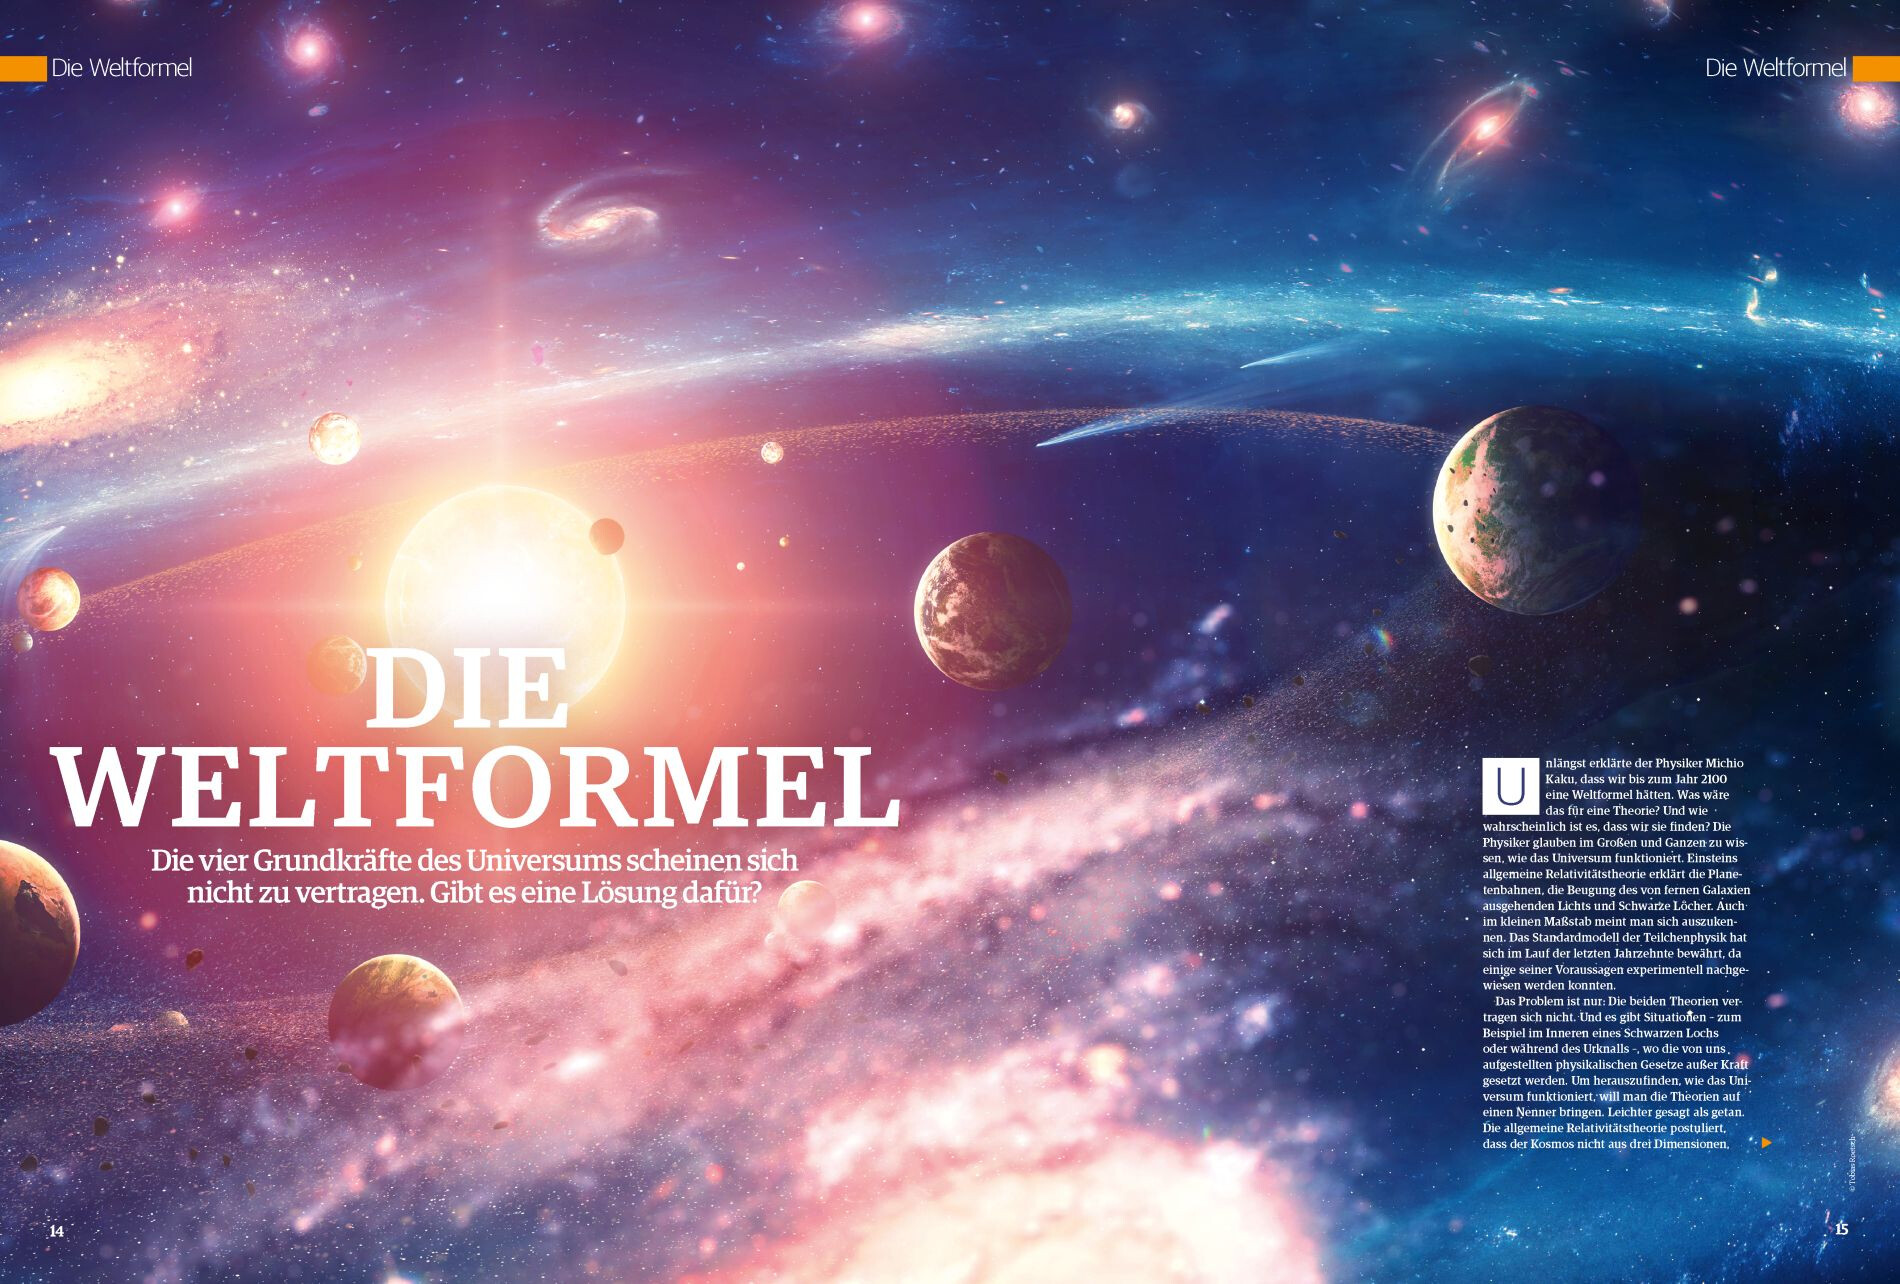 Space Weltraum Magazin 01/2020